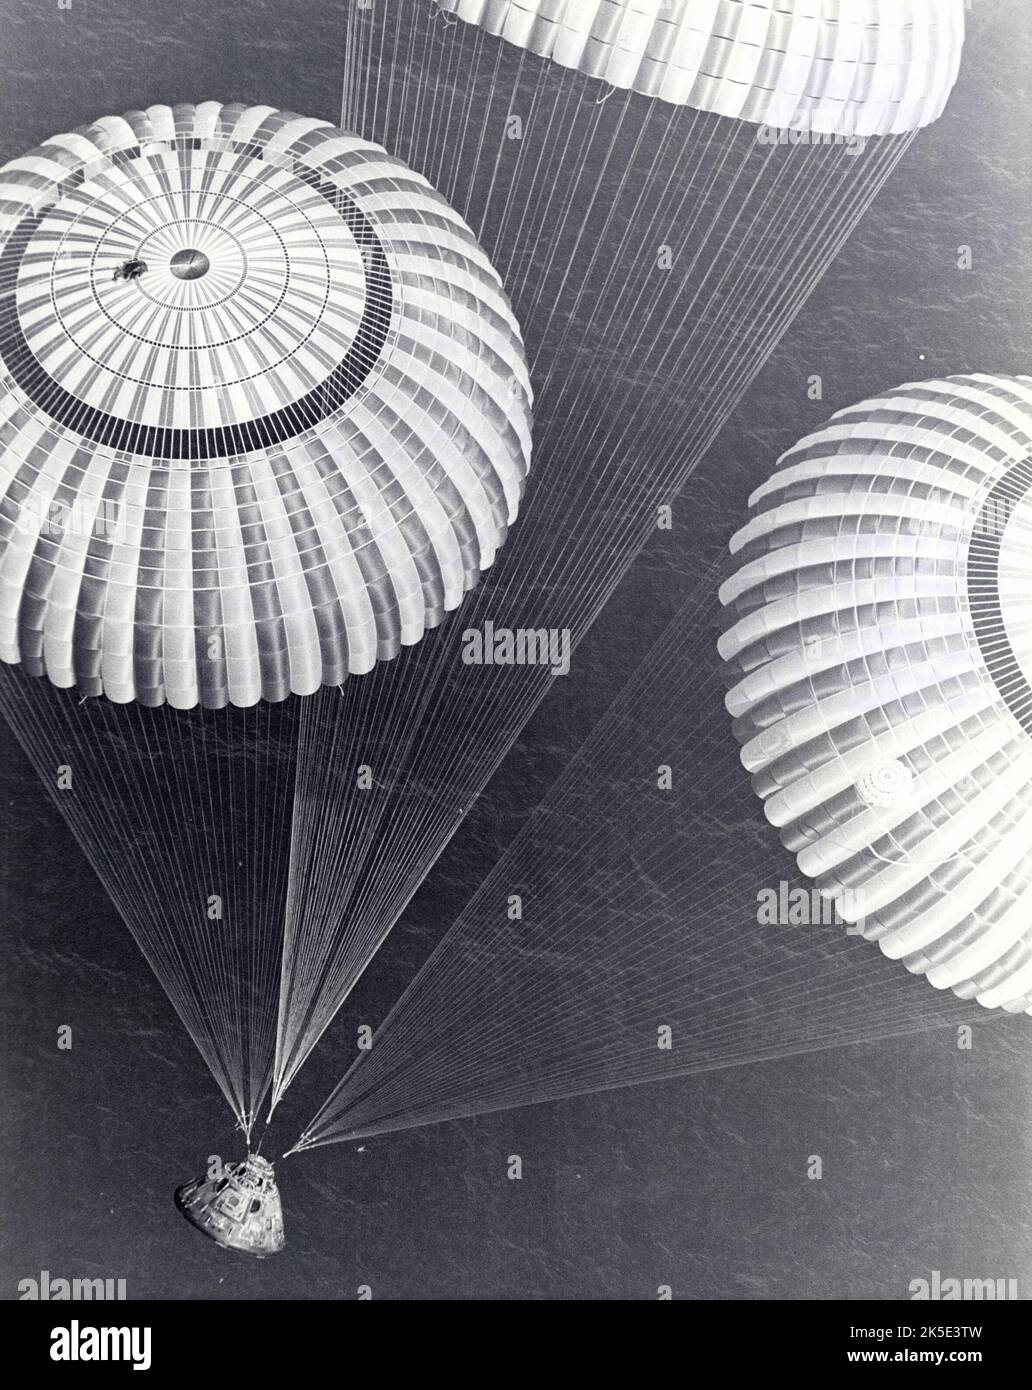 Apollo 17 Splashdown. La capsula e l'equipaggio dell'Apollo 17 si sono abbattute alle 14:25:00 EST del 19 dicembre 1972. La missione segnò la missione Apollo più lunga, 504 ore, e il tempo di permanenza in superficie lunare più lungo, 75 ore, che consentì agli astronauti di condurre estese indagini geologiche. Hanno raccolto 257 libbre (117 chilogrammi) di campioni lunari. Credito: NASA Foto Stock